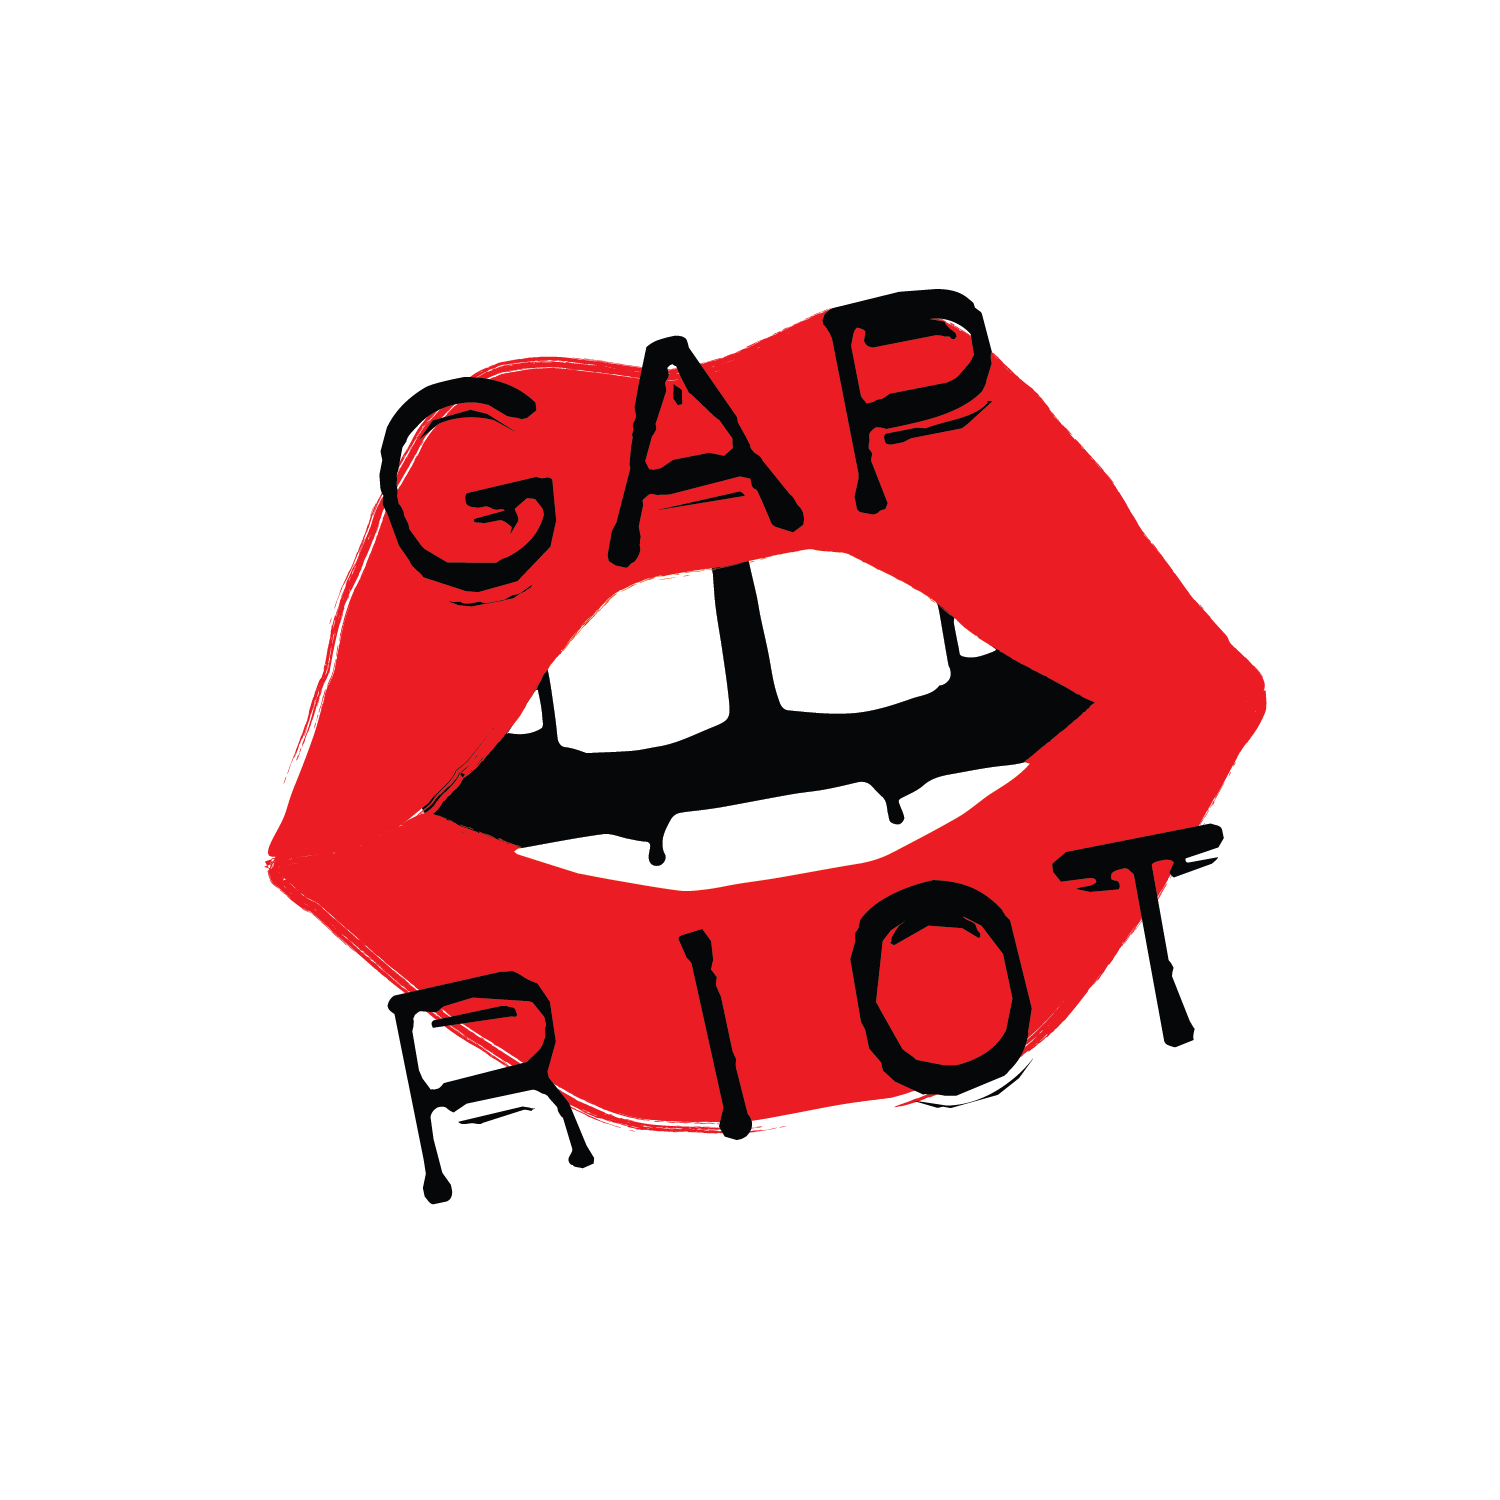 Gap Riot Press